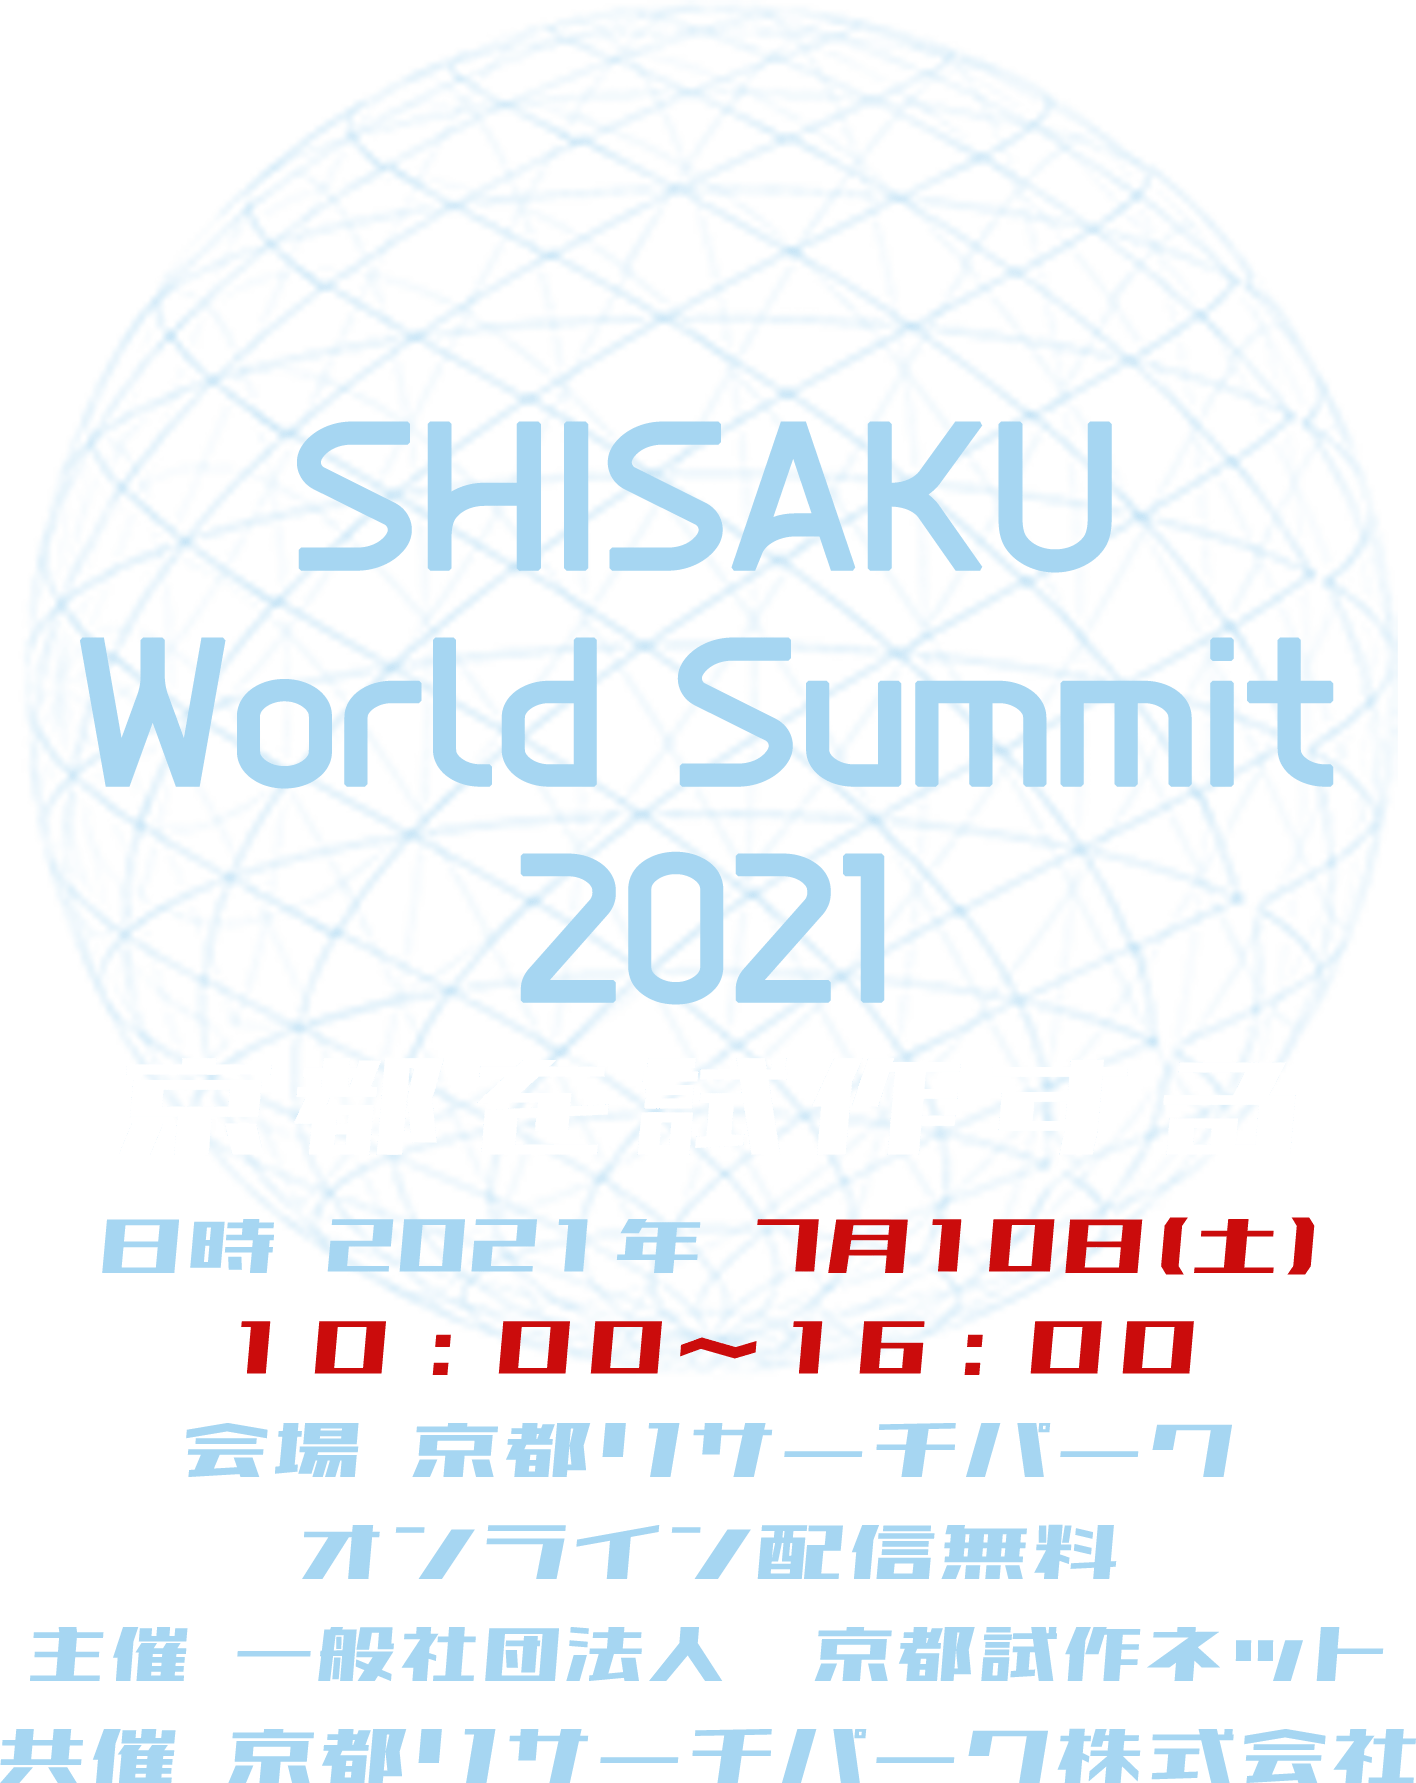 SHISAKU World Summit 2021